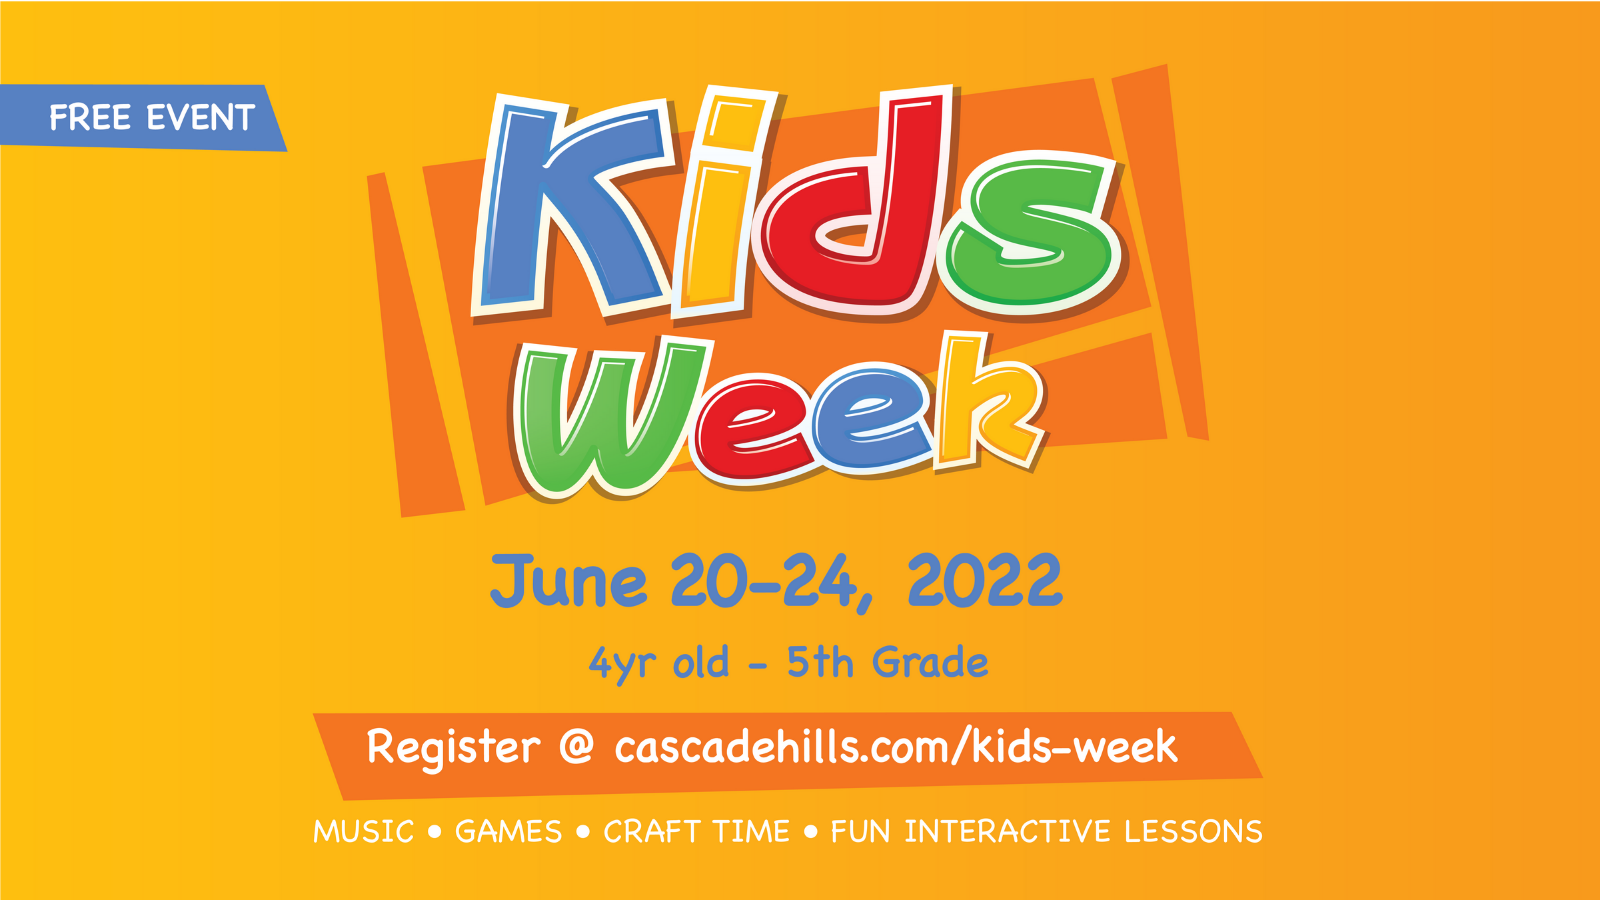 Kids Week at Cascade Hills